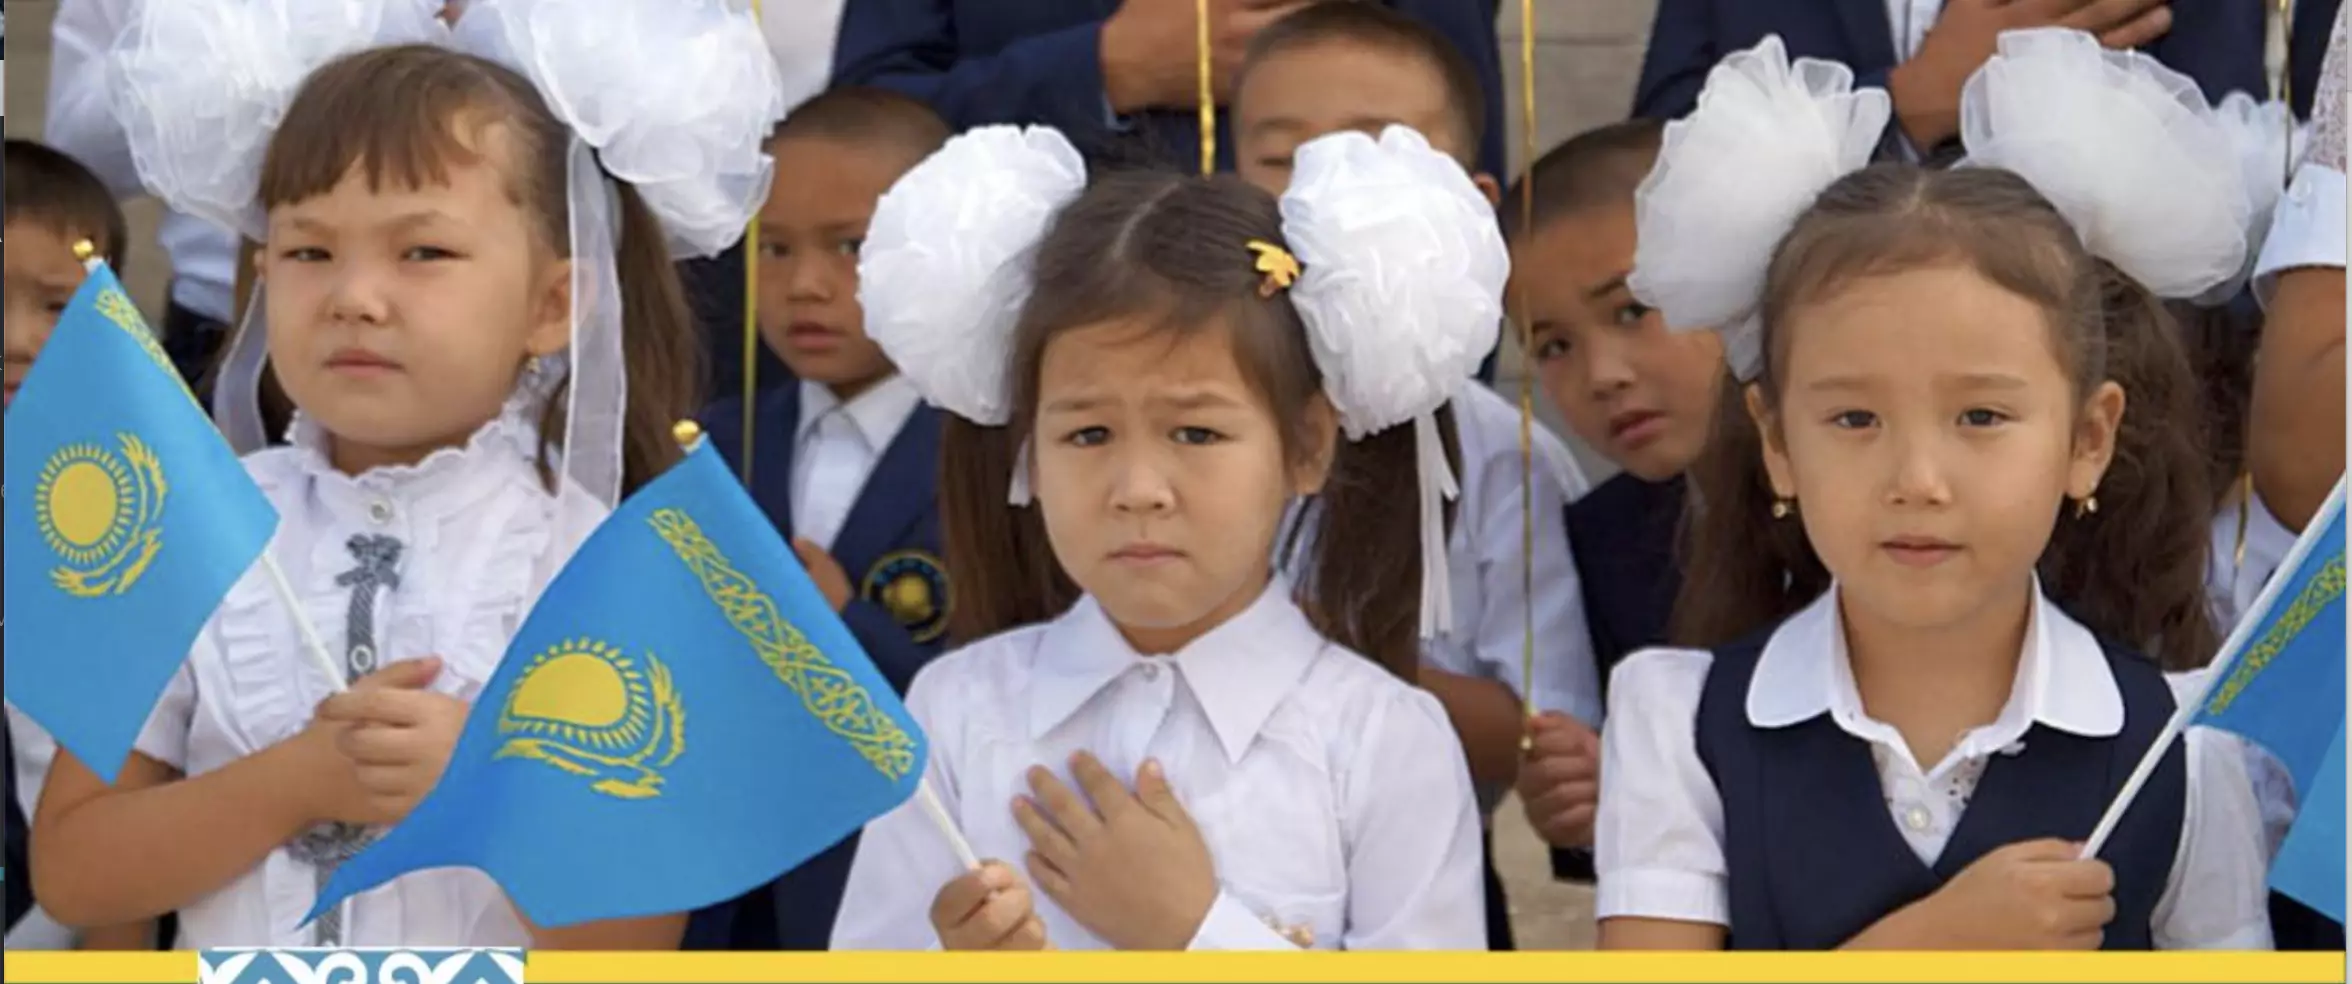 Школьников Казахстана хотят отправить пожить в сельские семьи для изучения казахского